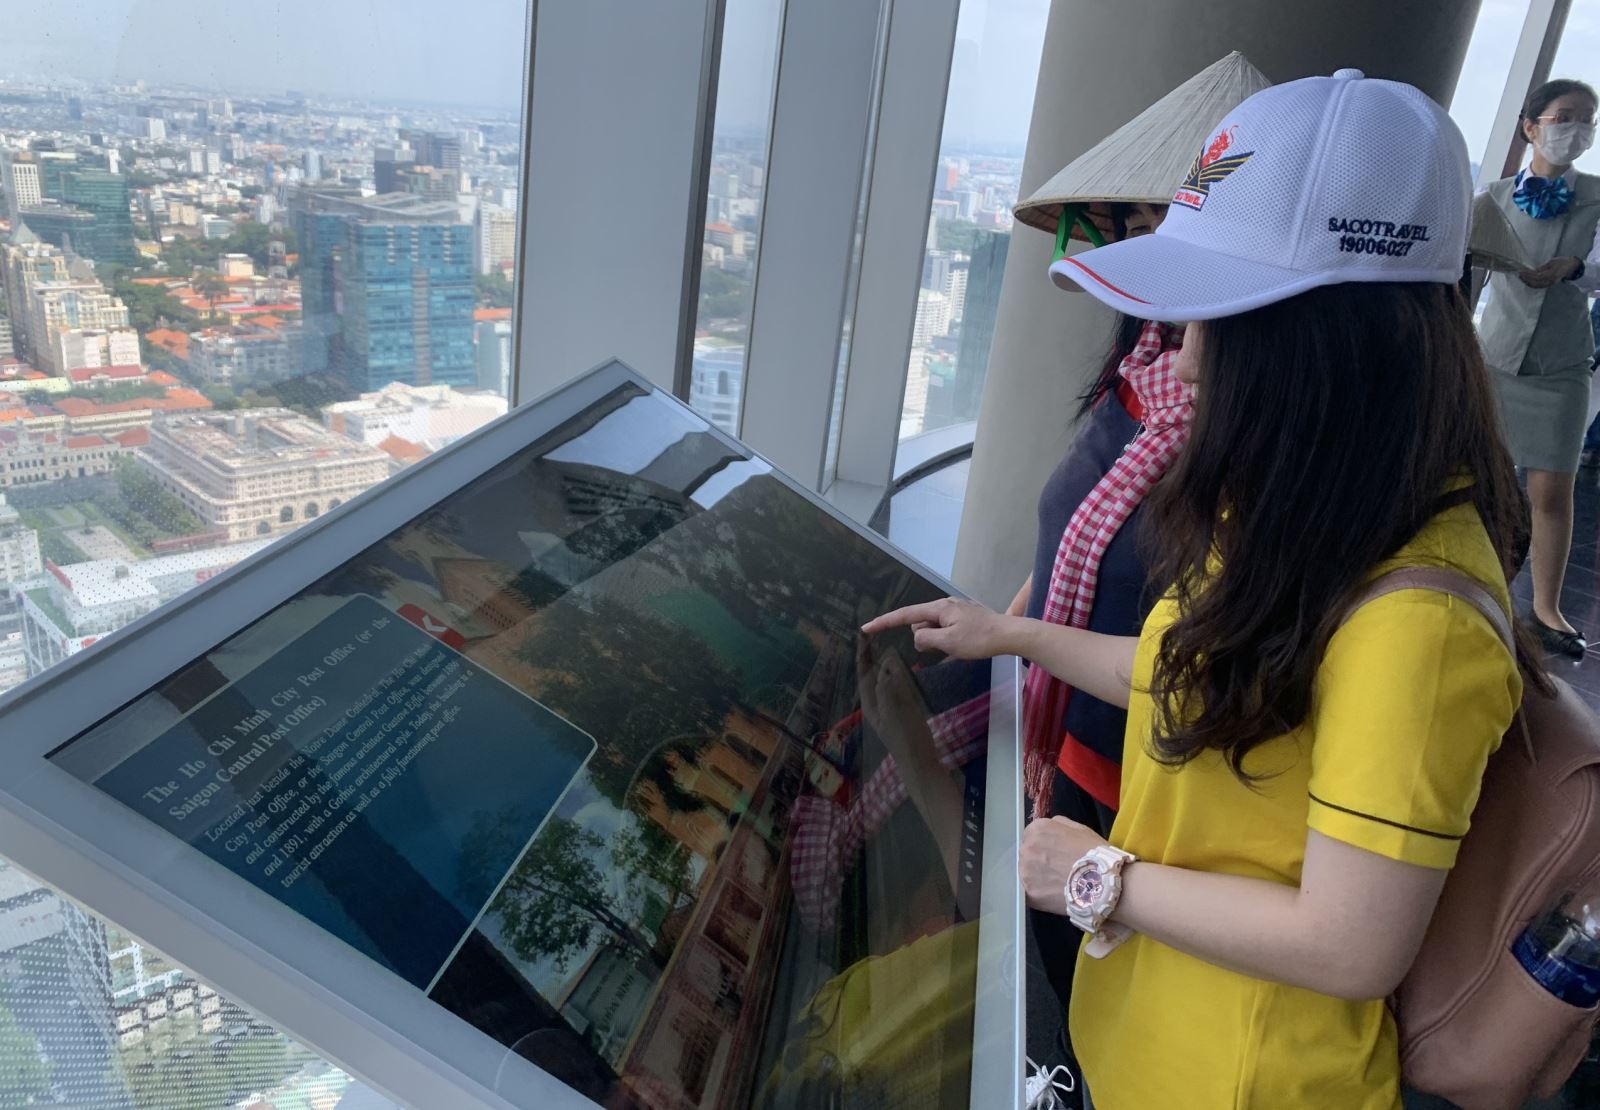 TP Hồ Chí Minh: Phát triển du lịch thông minh để giữ chân du khách - Ảnh 3.